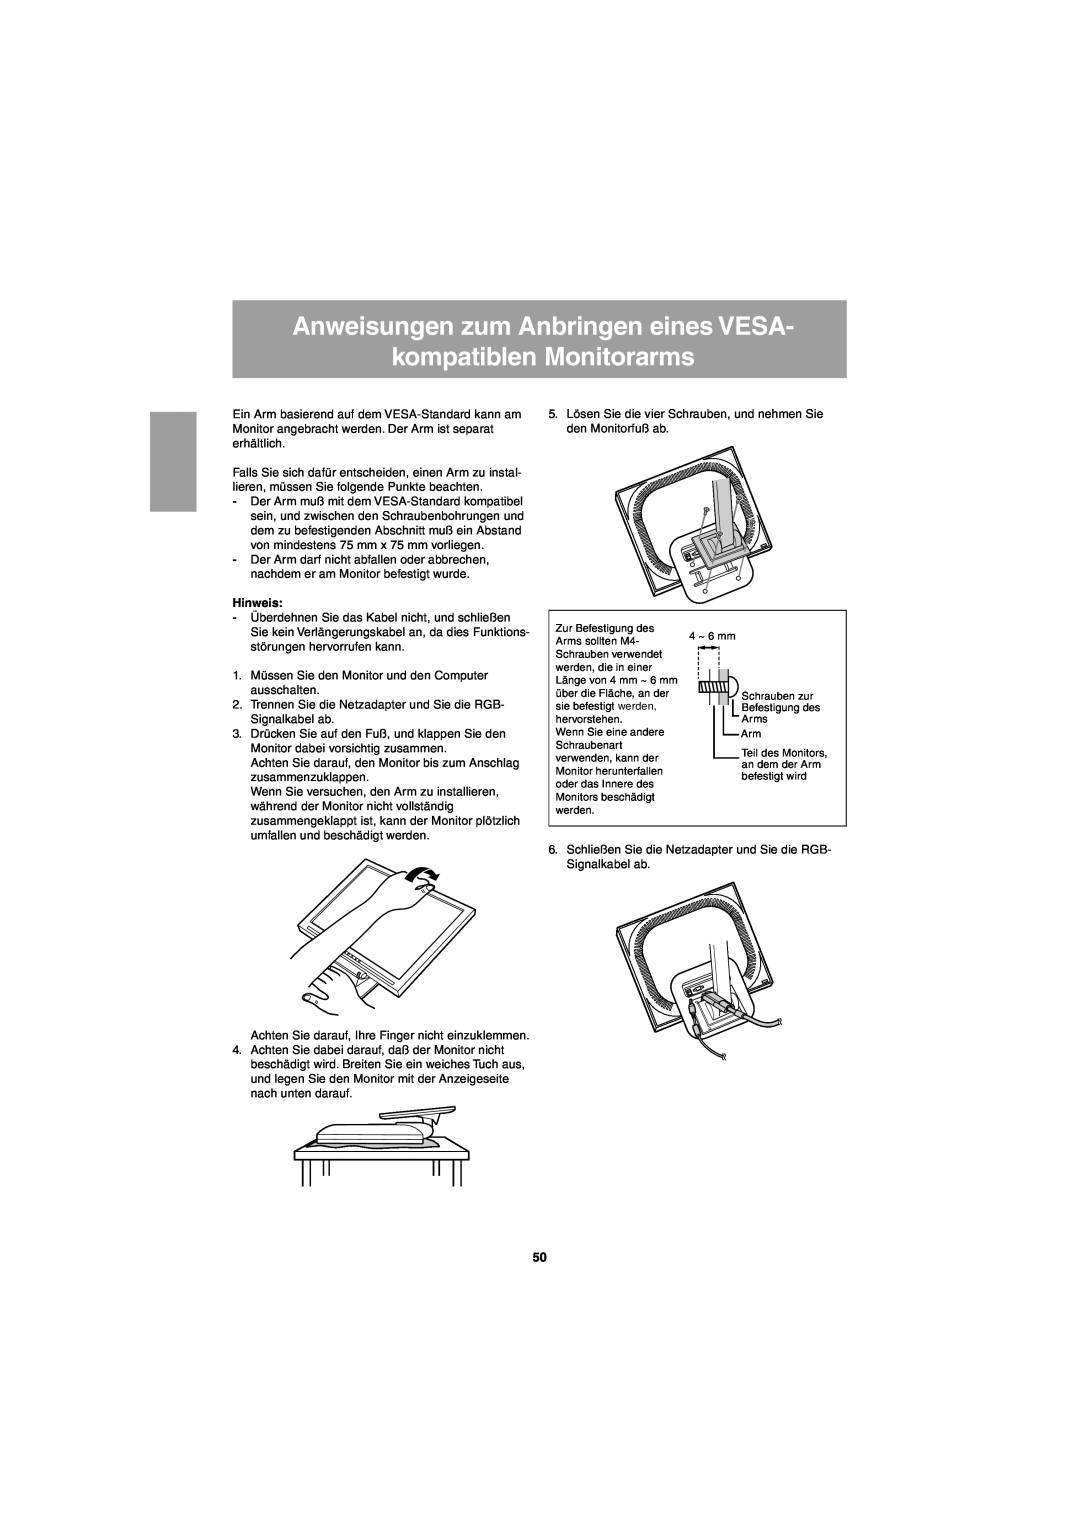 Sharp LL-T15G1, LL-E15G1 operation manual Anweisungen zum Anbringen eines VESA kompatiblen Monitorarms, Hinweis 